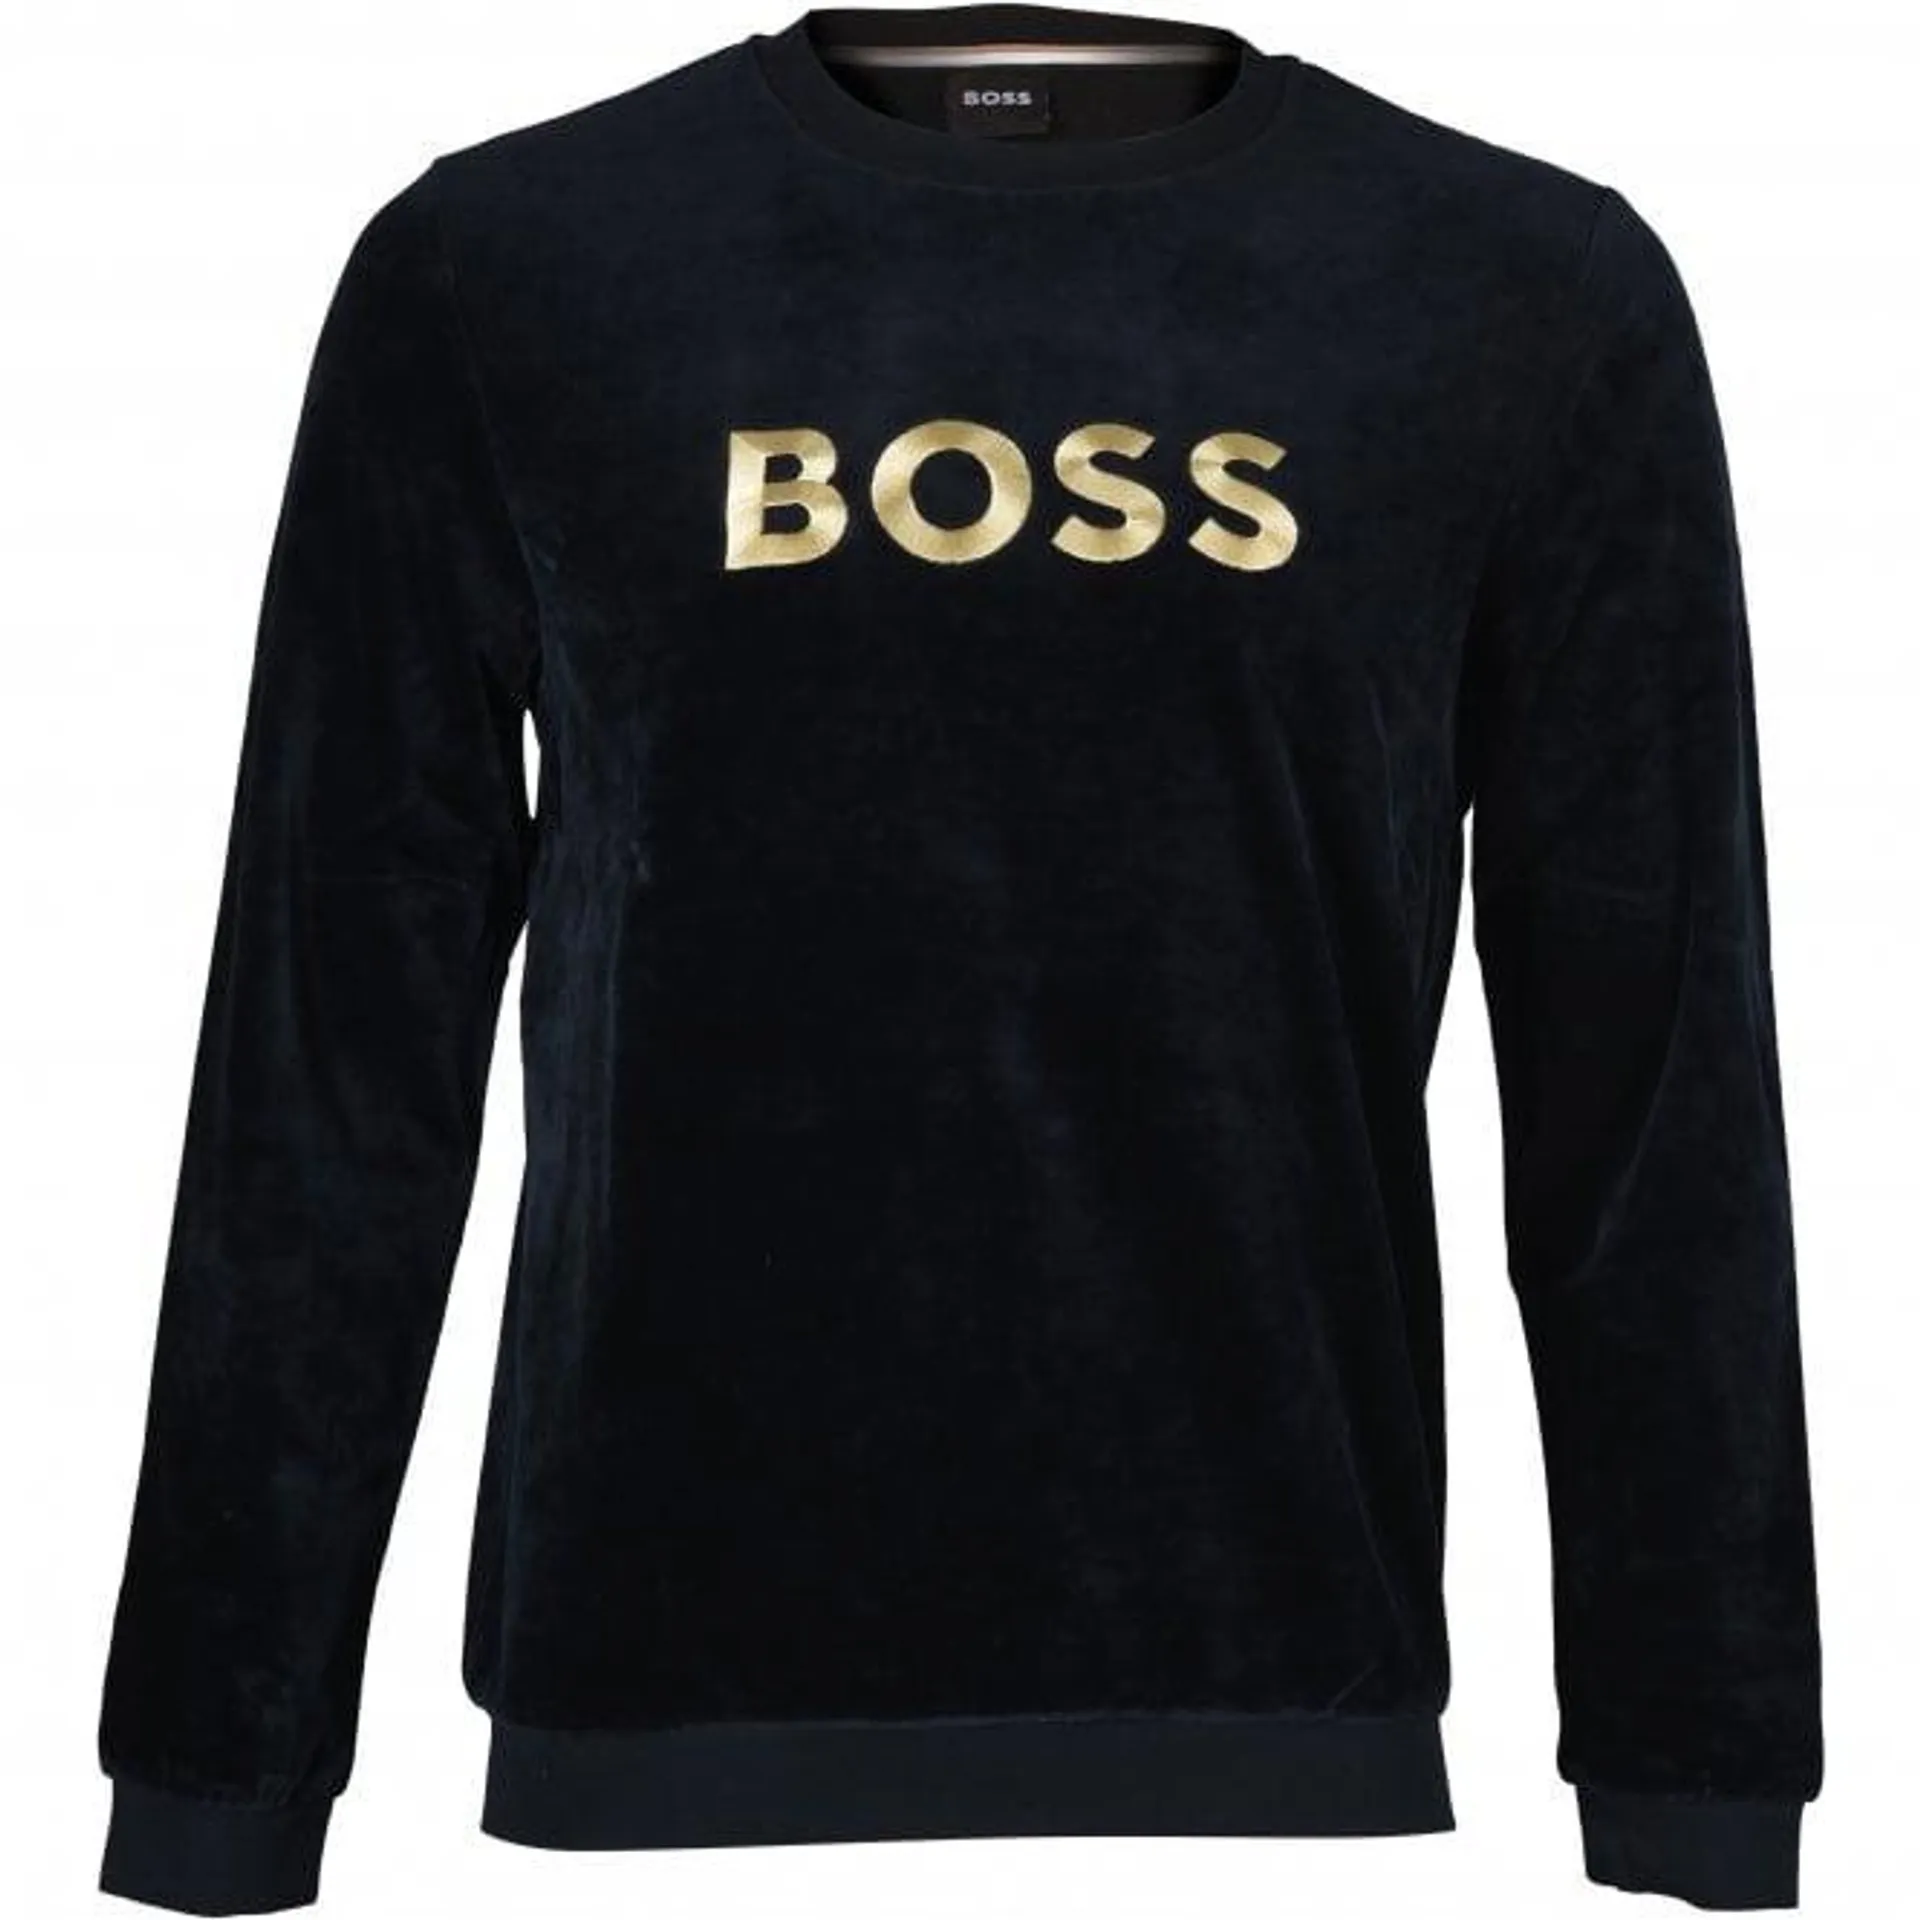 Luxe Velour Loungewear Sweatshirt, Black/gold